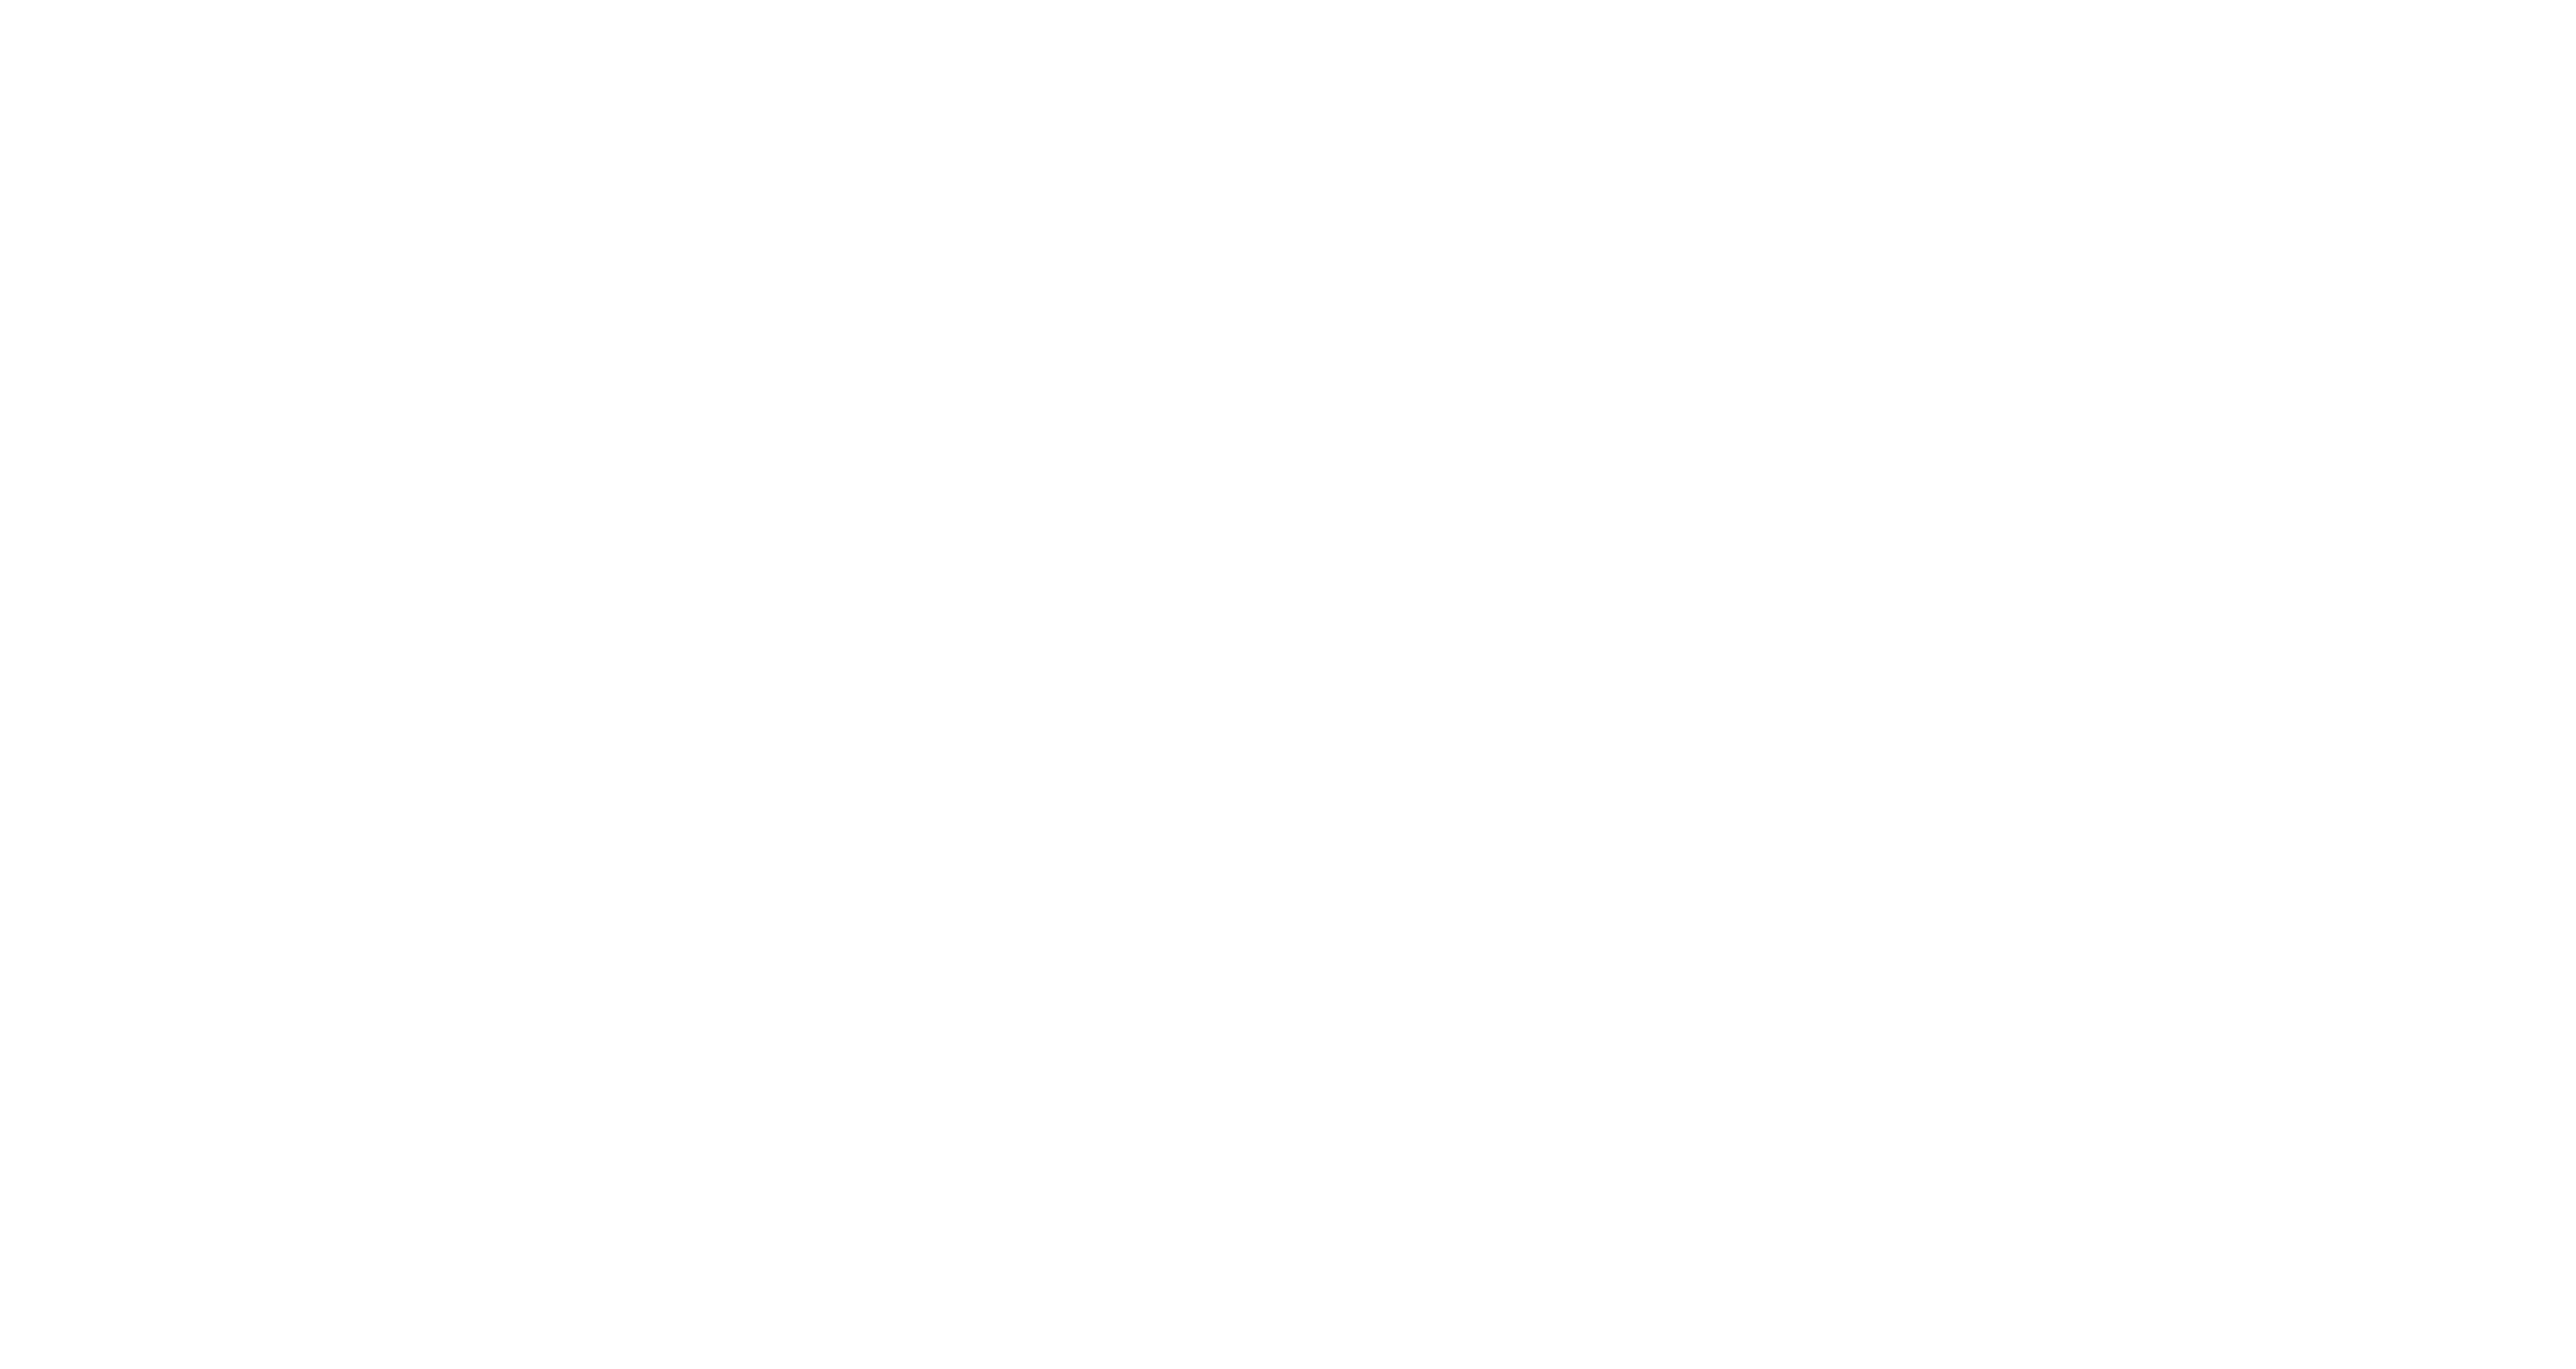 mrs greenbird tour 2022